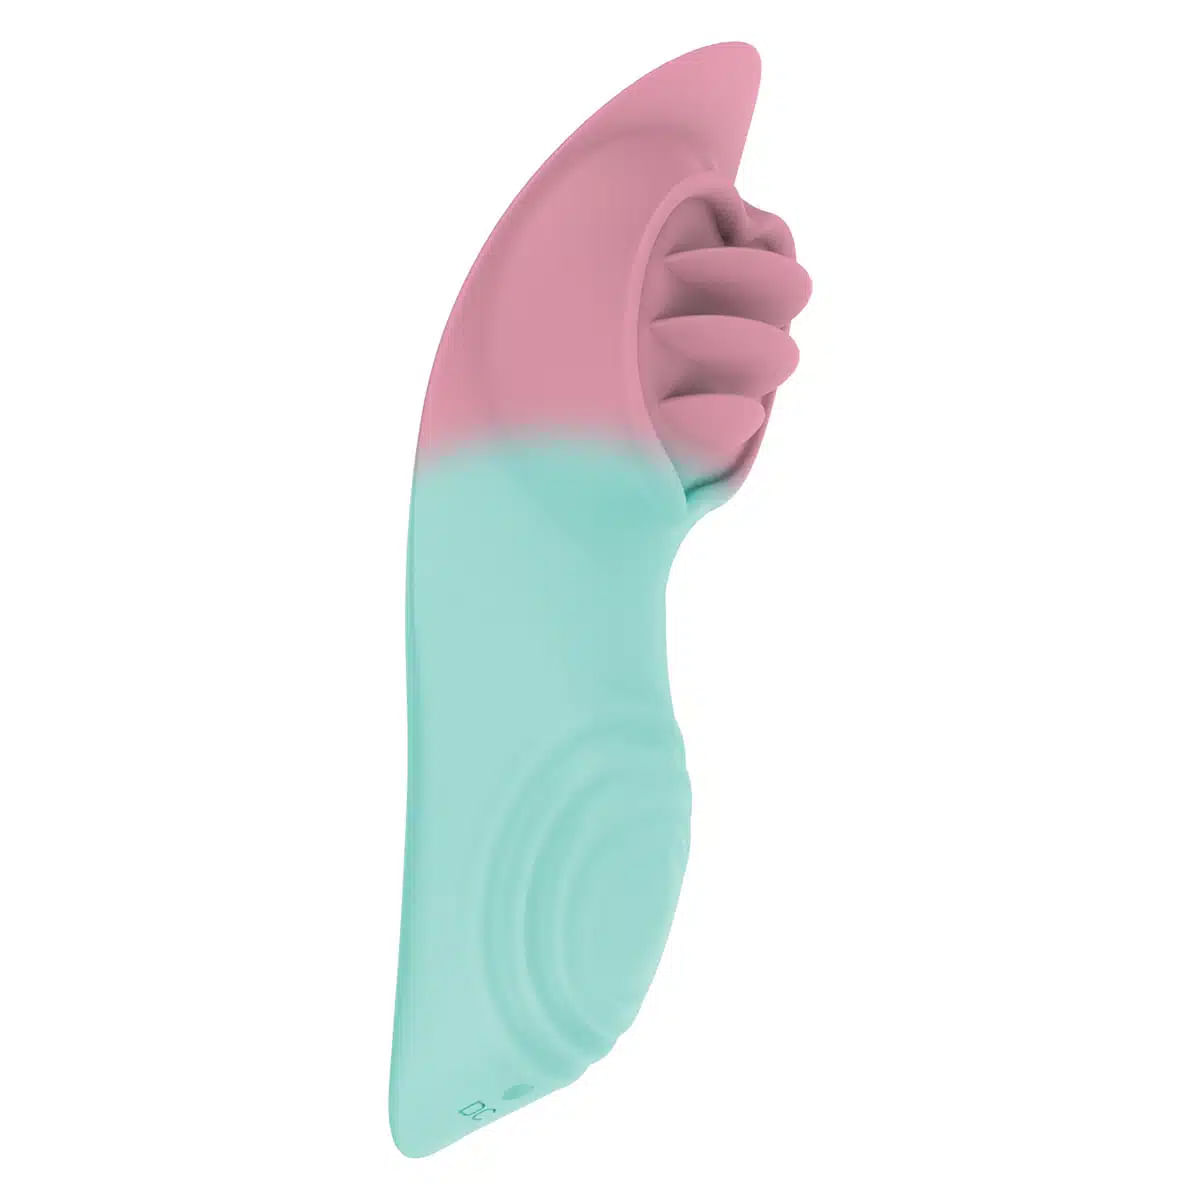 Estimulador de Clitoris Controlado por App com 9 Modos de Vibração Our Moment Import